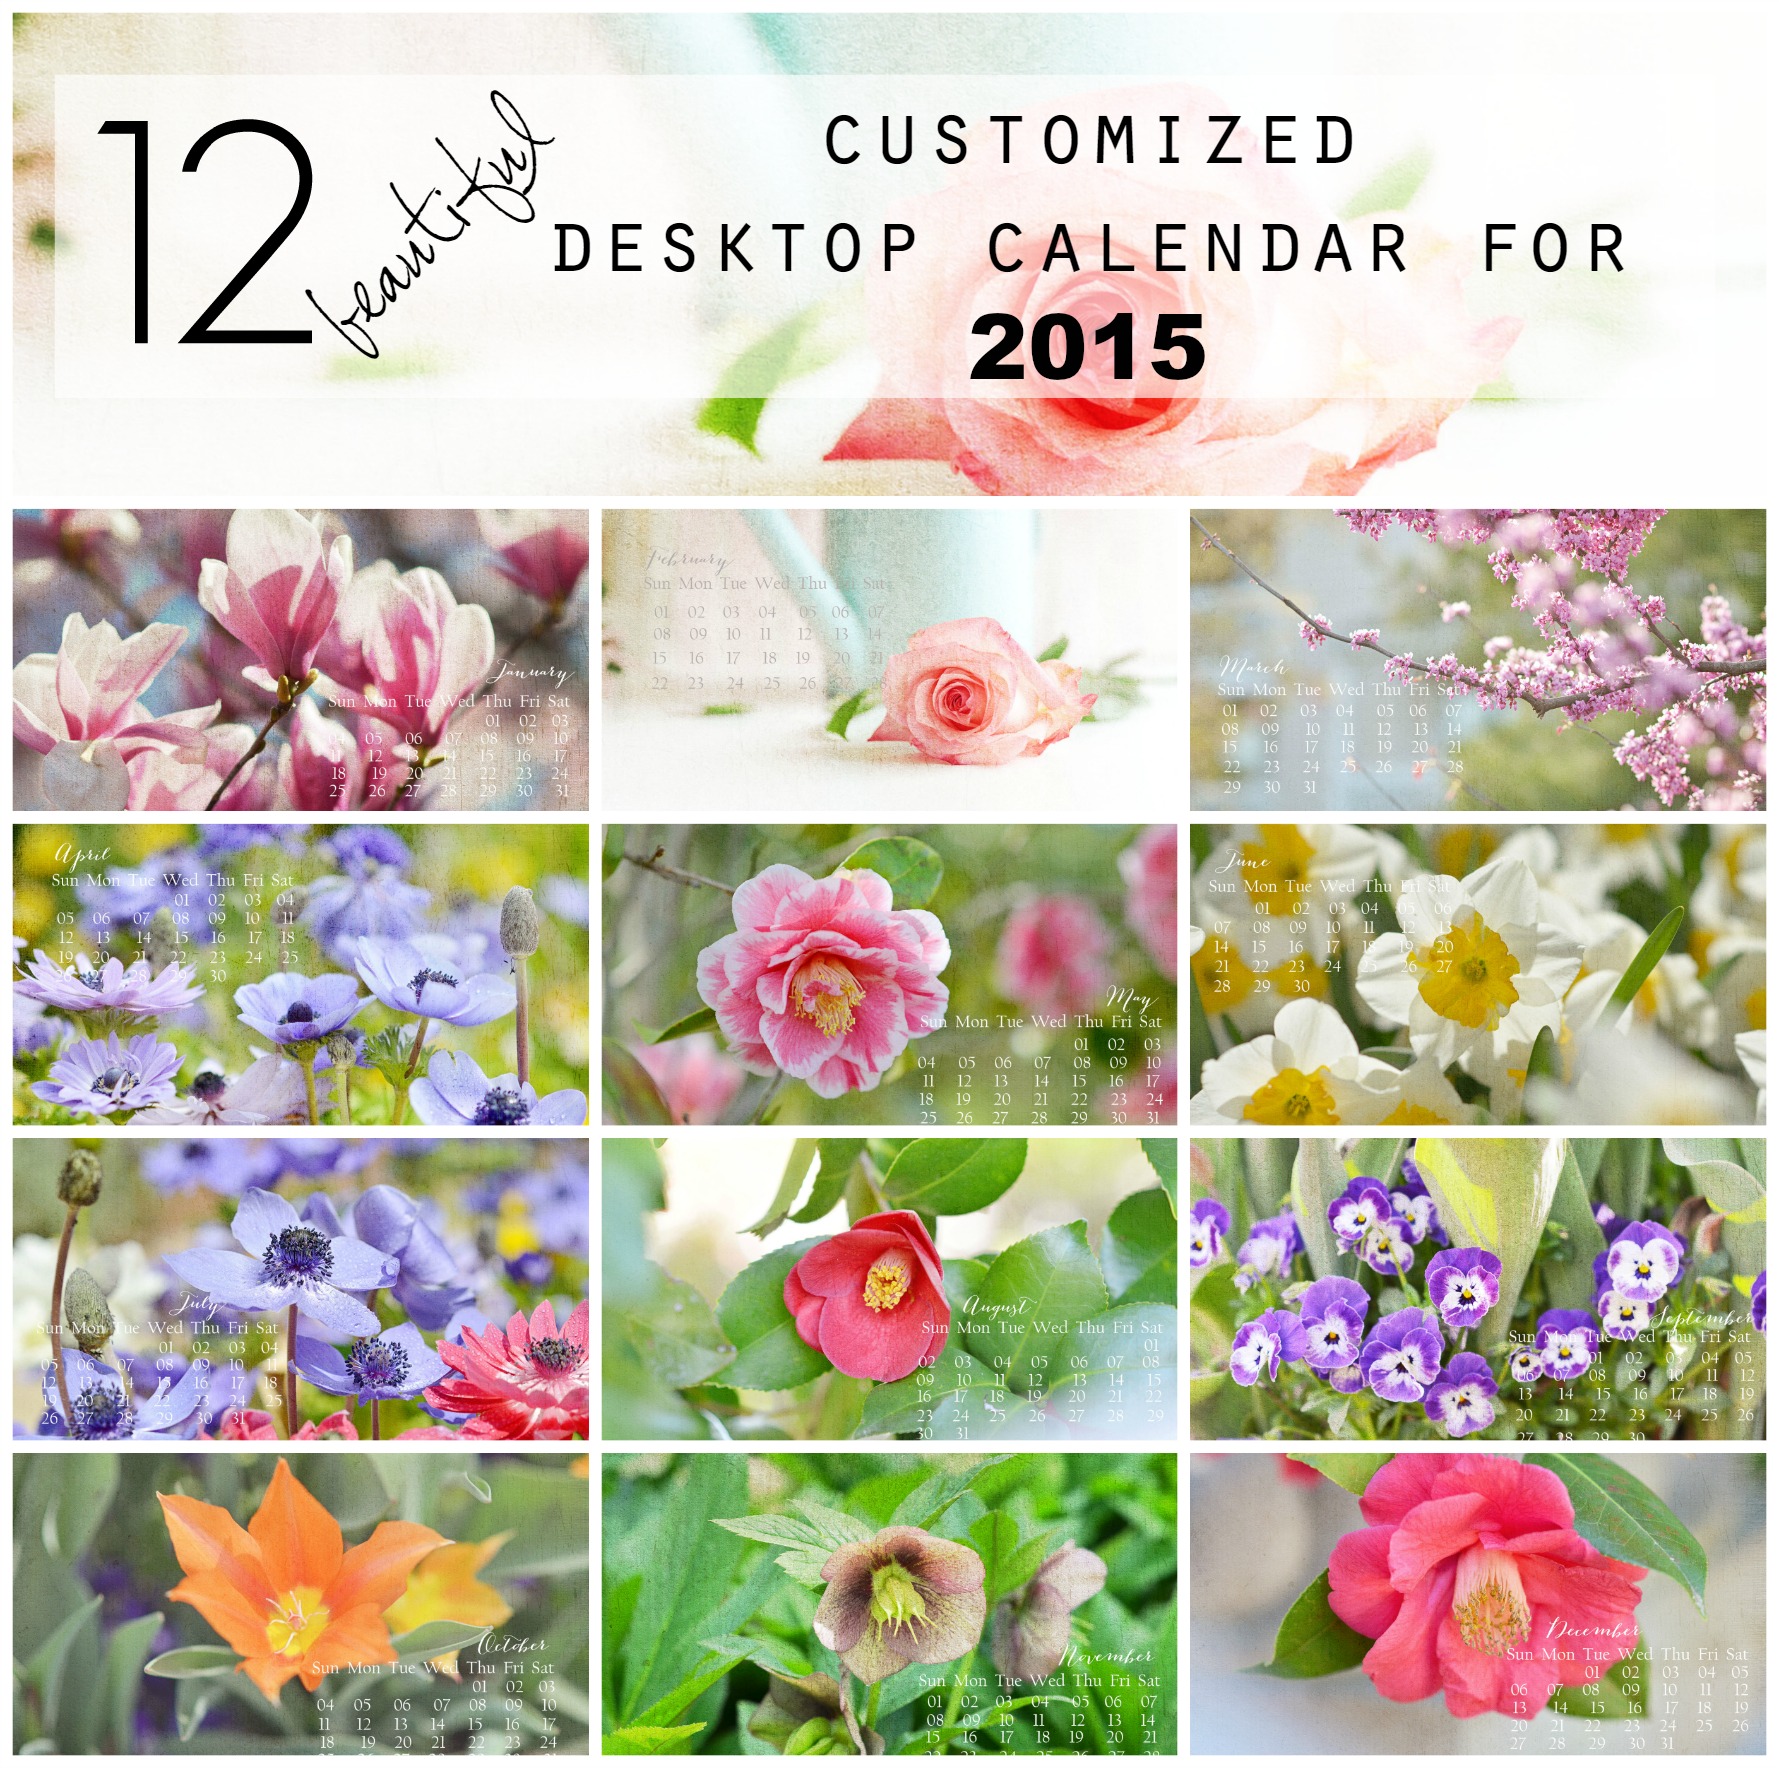 12 Beautiful Customized Desktop Calendar - Beautiful Pics For Calendars - HD Wallpaper 